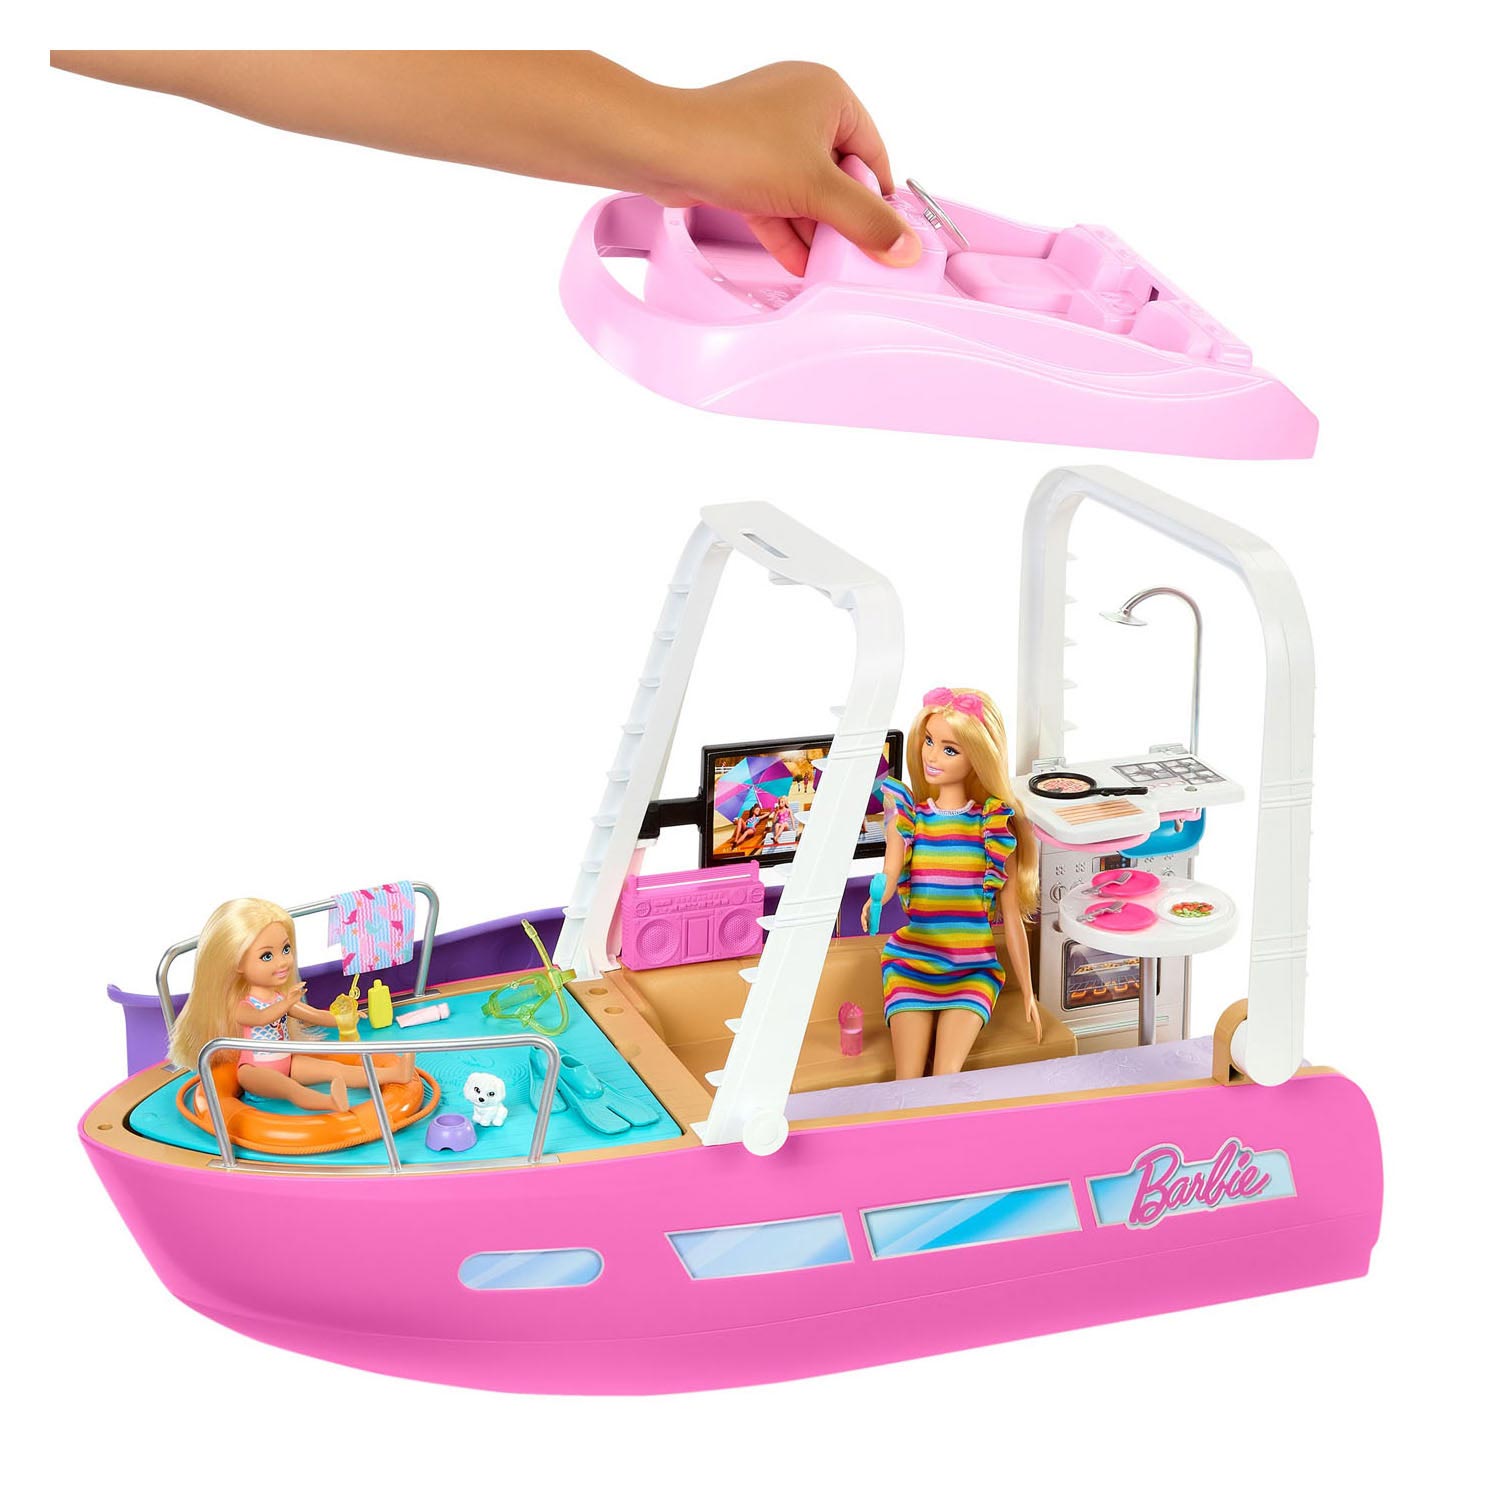 Ensemble de jeu Barbie DreamBoat, 20 pièces.